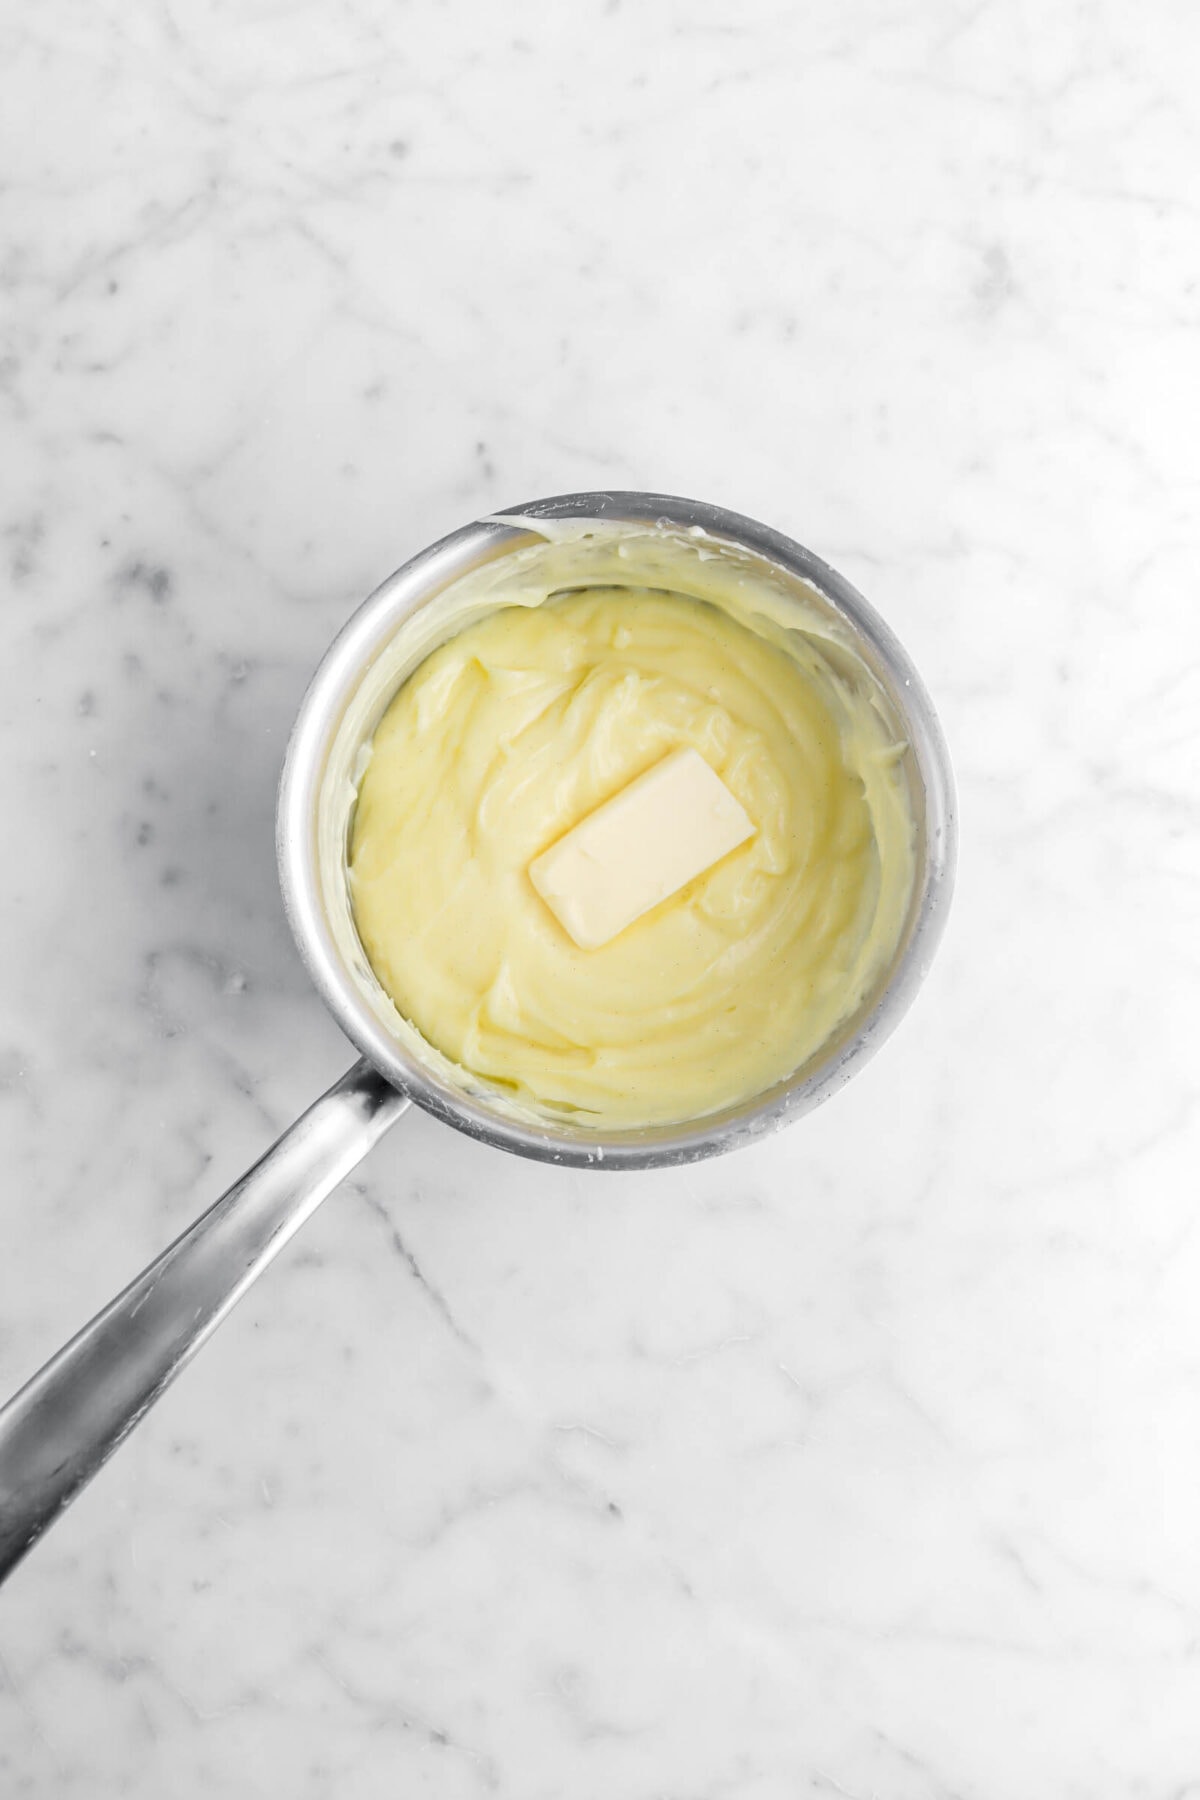 butter added to vanilla custard.